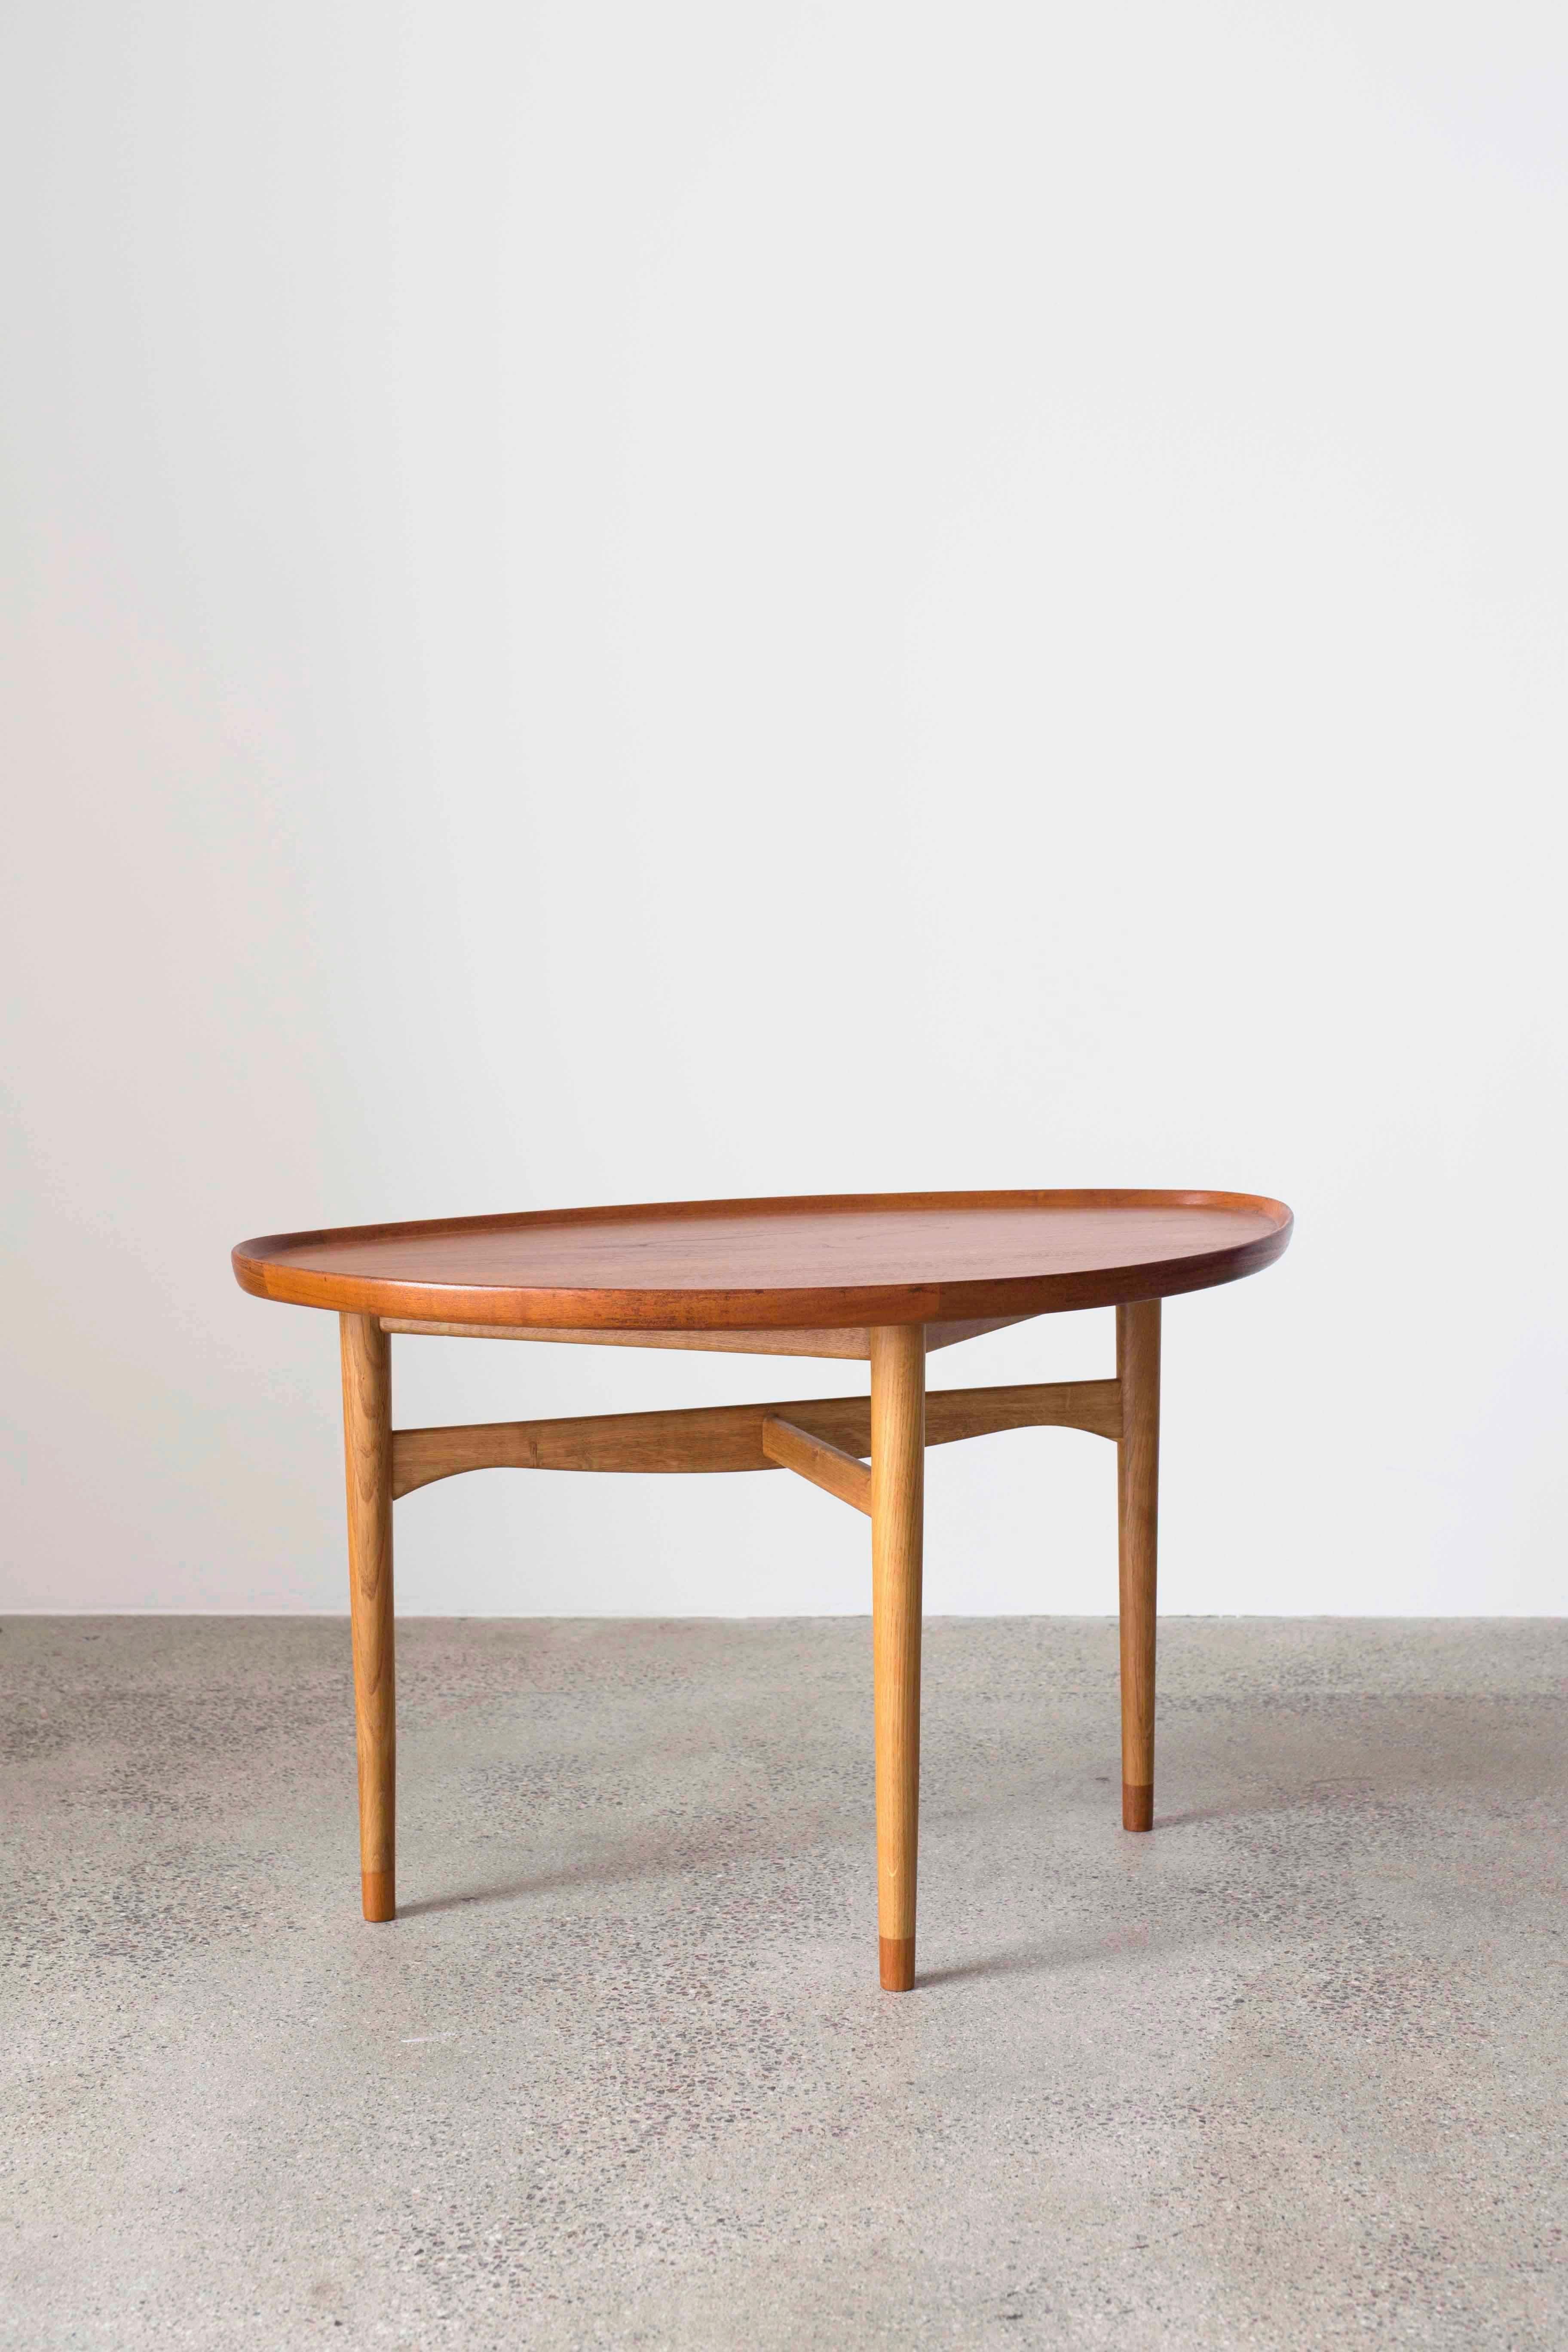 Finn Juhl Couchtisch. Tischplatte mit erhöhten Kanten und Beinenden aus Teakholz, Gestell aus Eiche.

Entworfen von Finn Juhl 1948 und ausgeführt von Bovirke, Dänemark.

Guter Zustand.